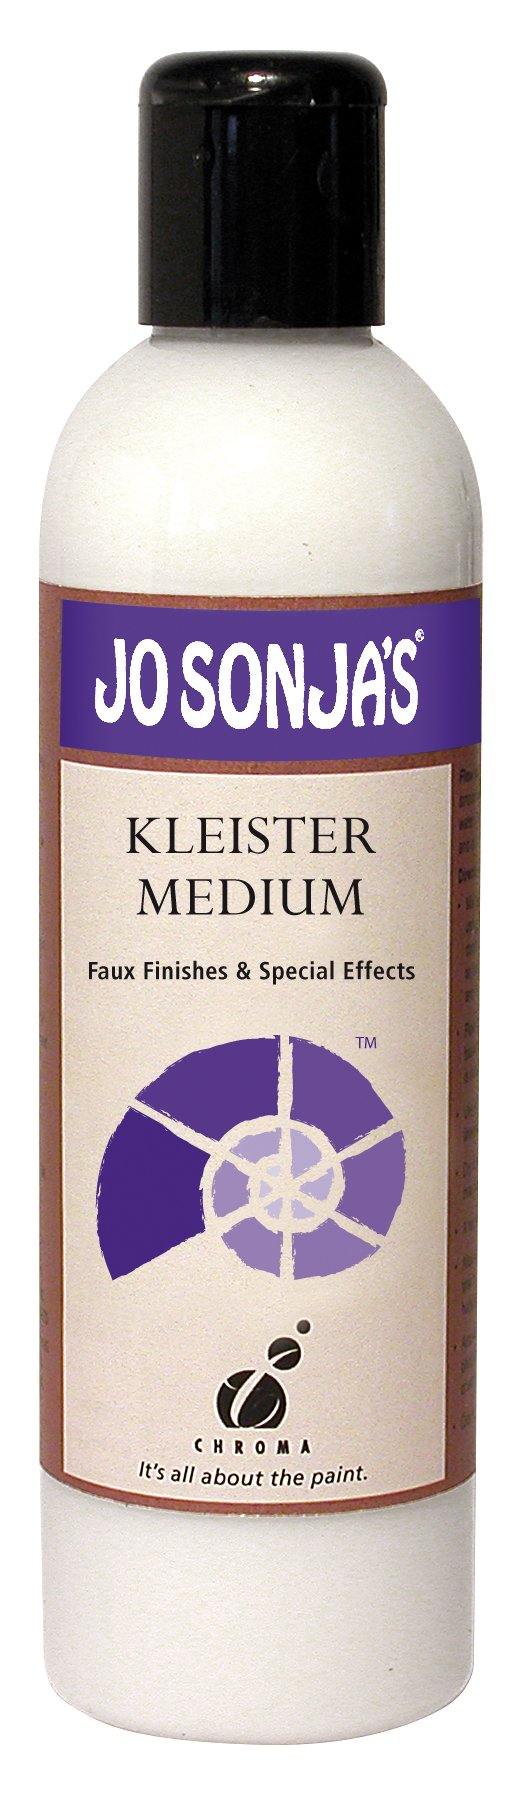 Jo Sonja's Kleister Medium 250ml - Art Supplies Australia